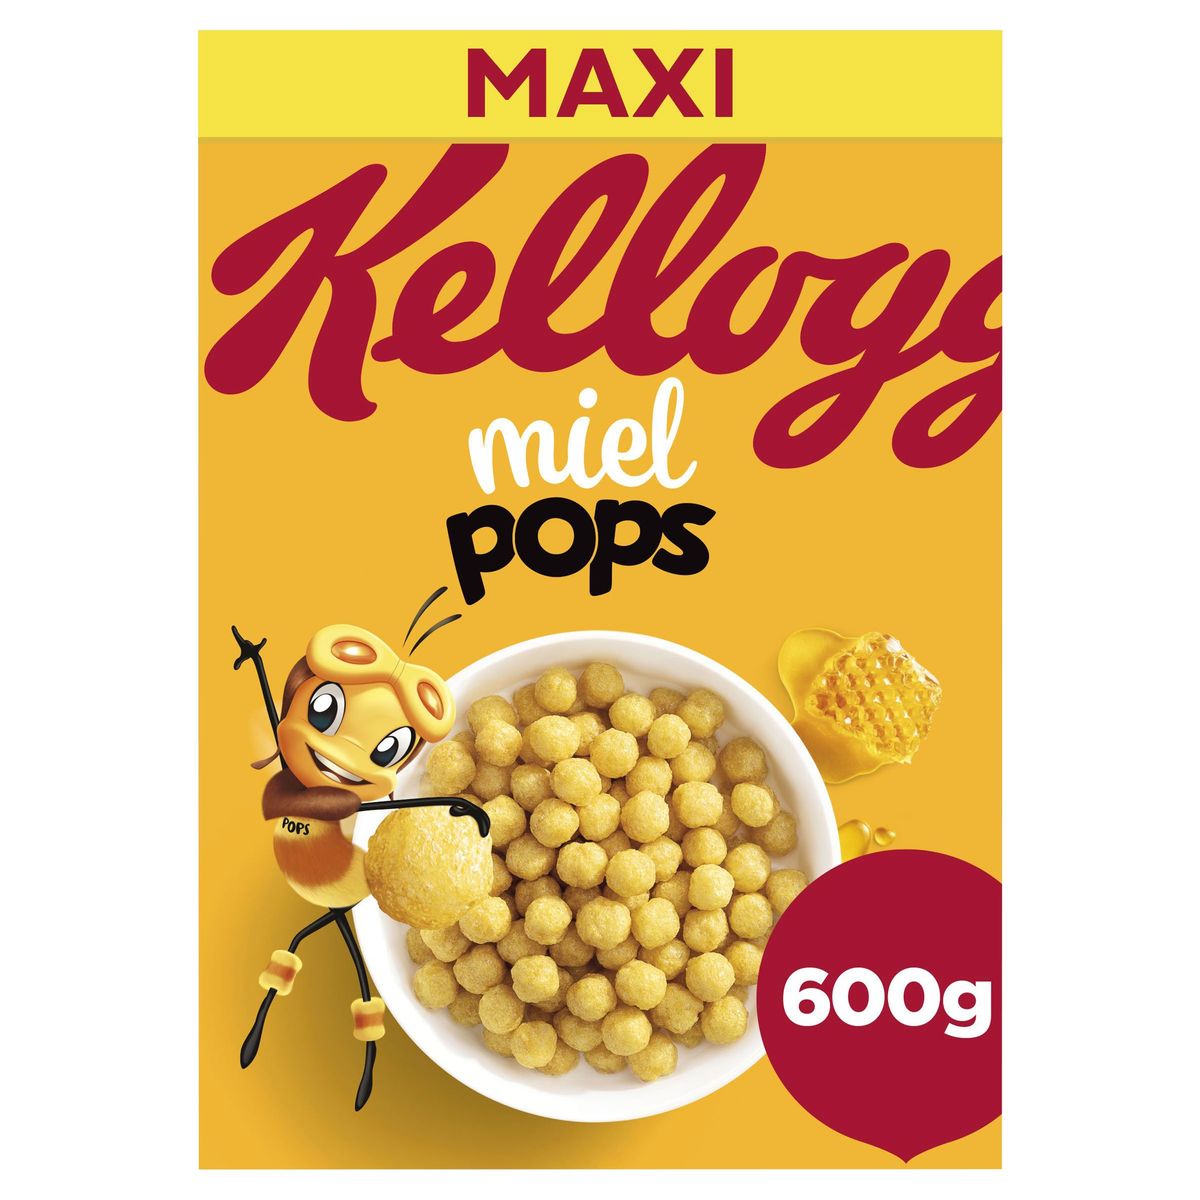 Kellogg's Miel Pops Maxi 600 g